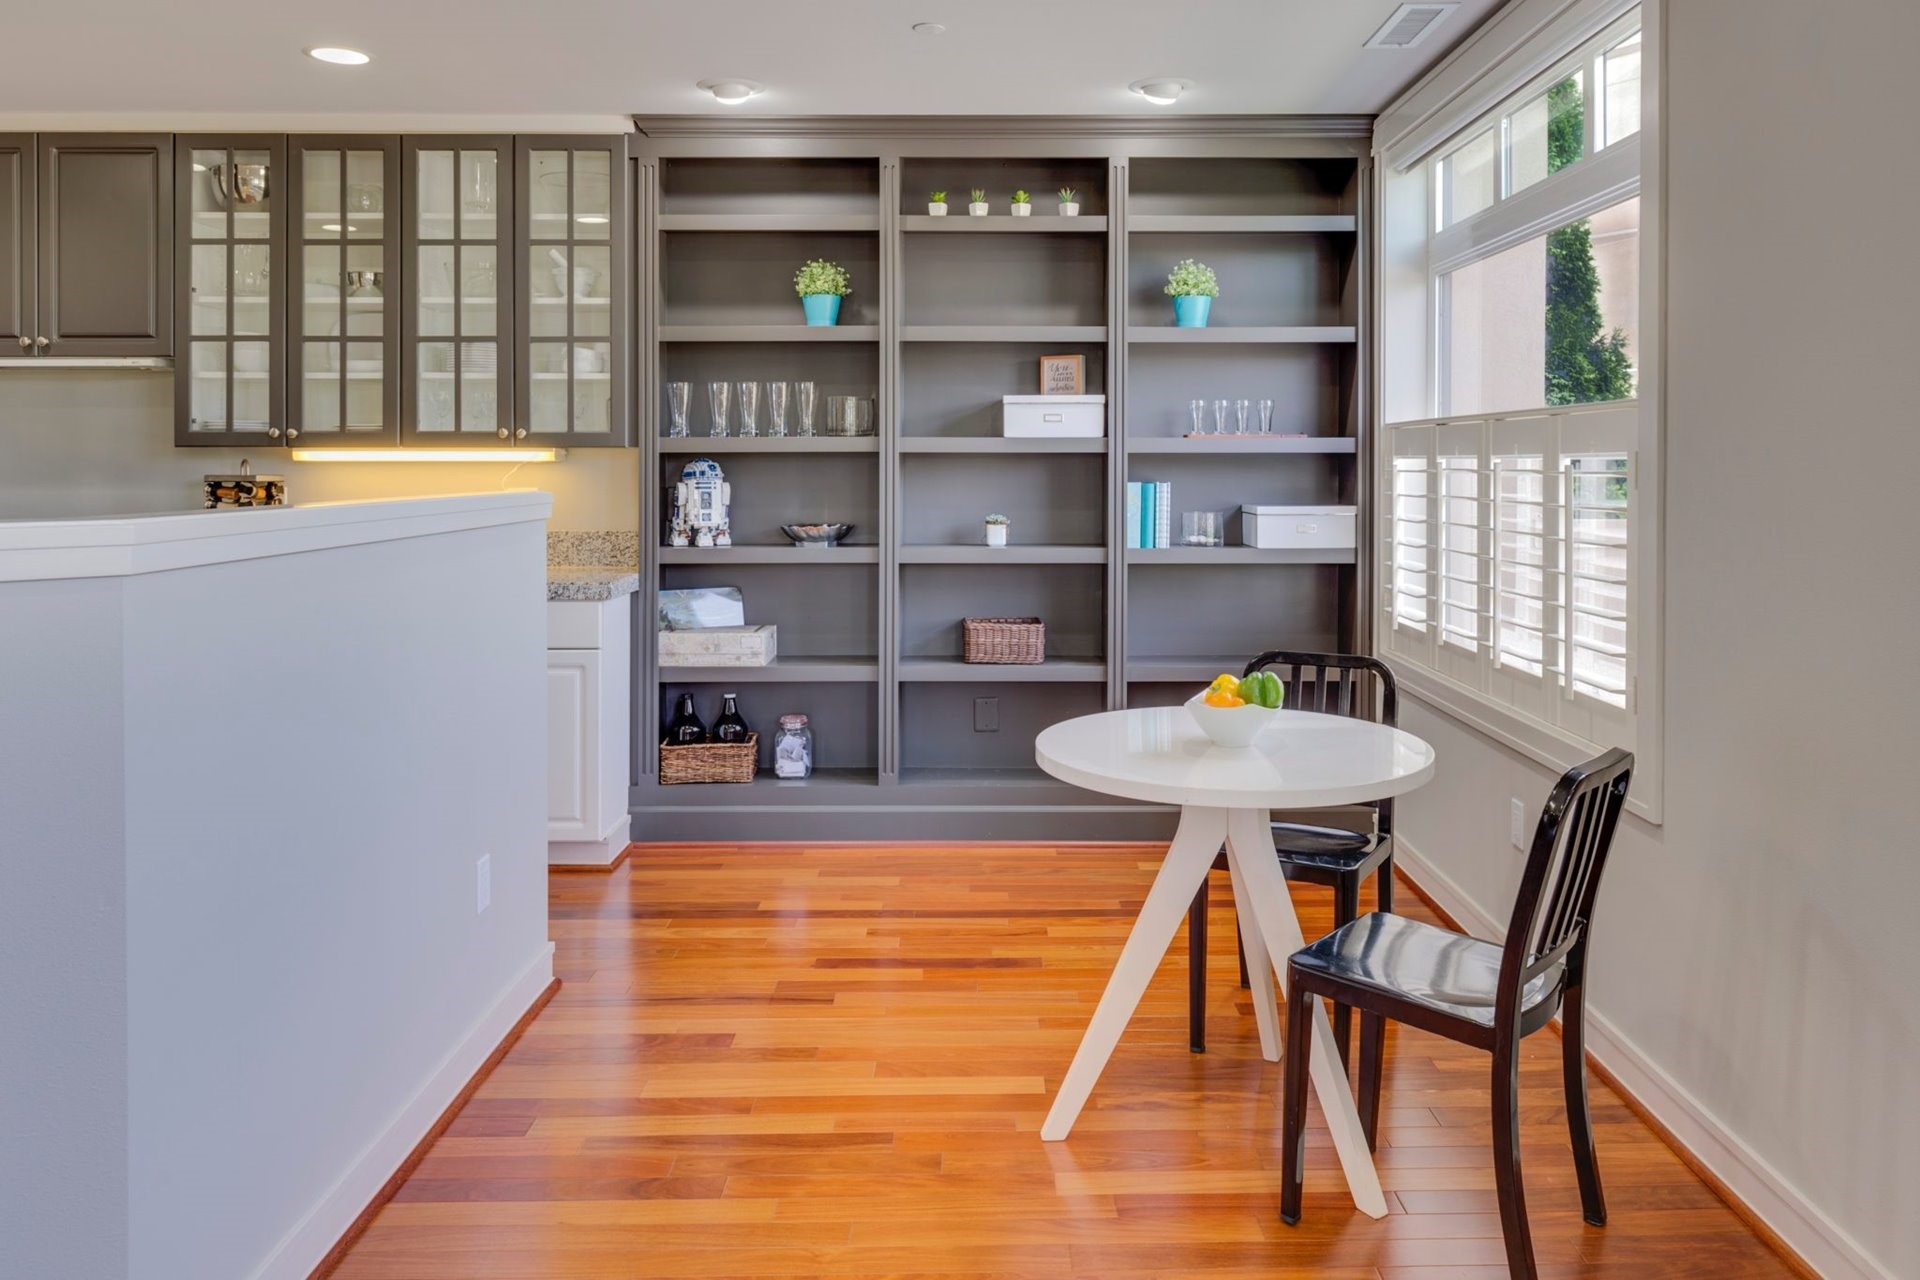 Restore your home with bookshelf home decor ideas